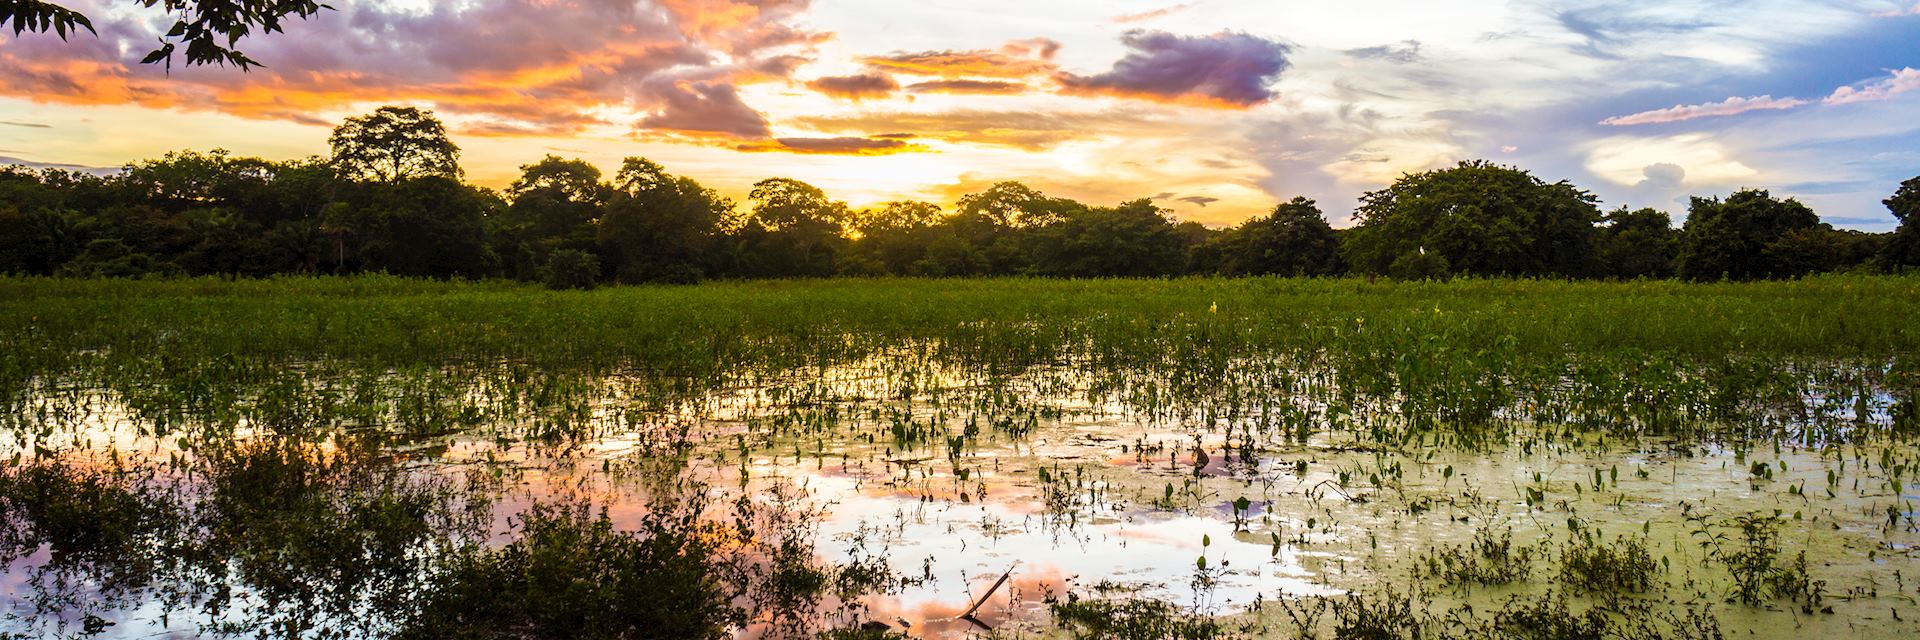 The Pantanal at sunset